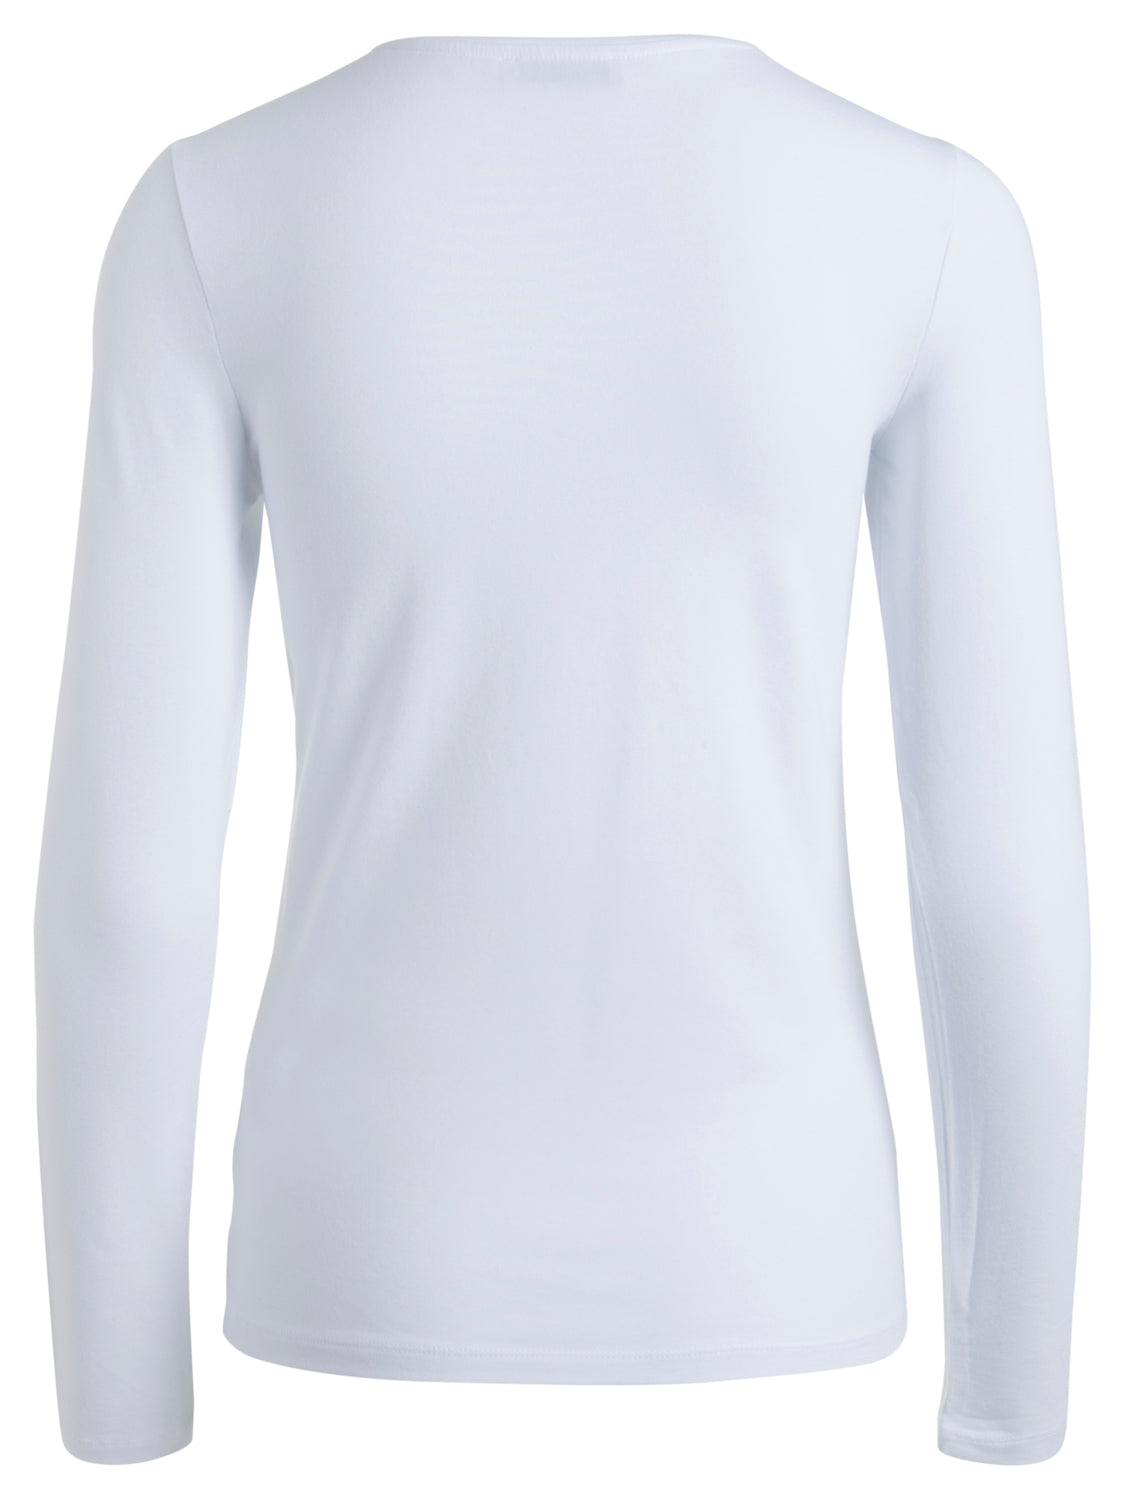 PCSIRENE T-shirt - bright white